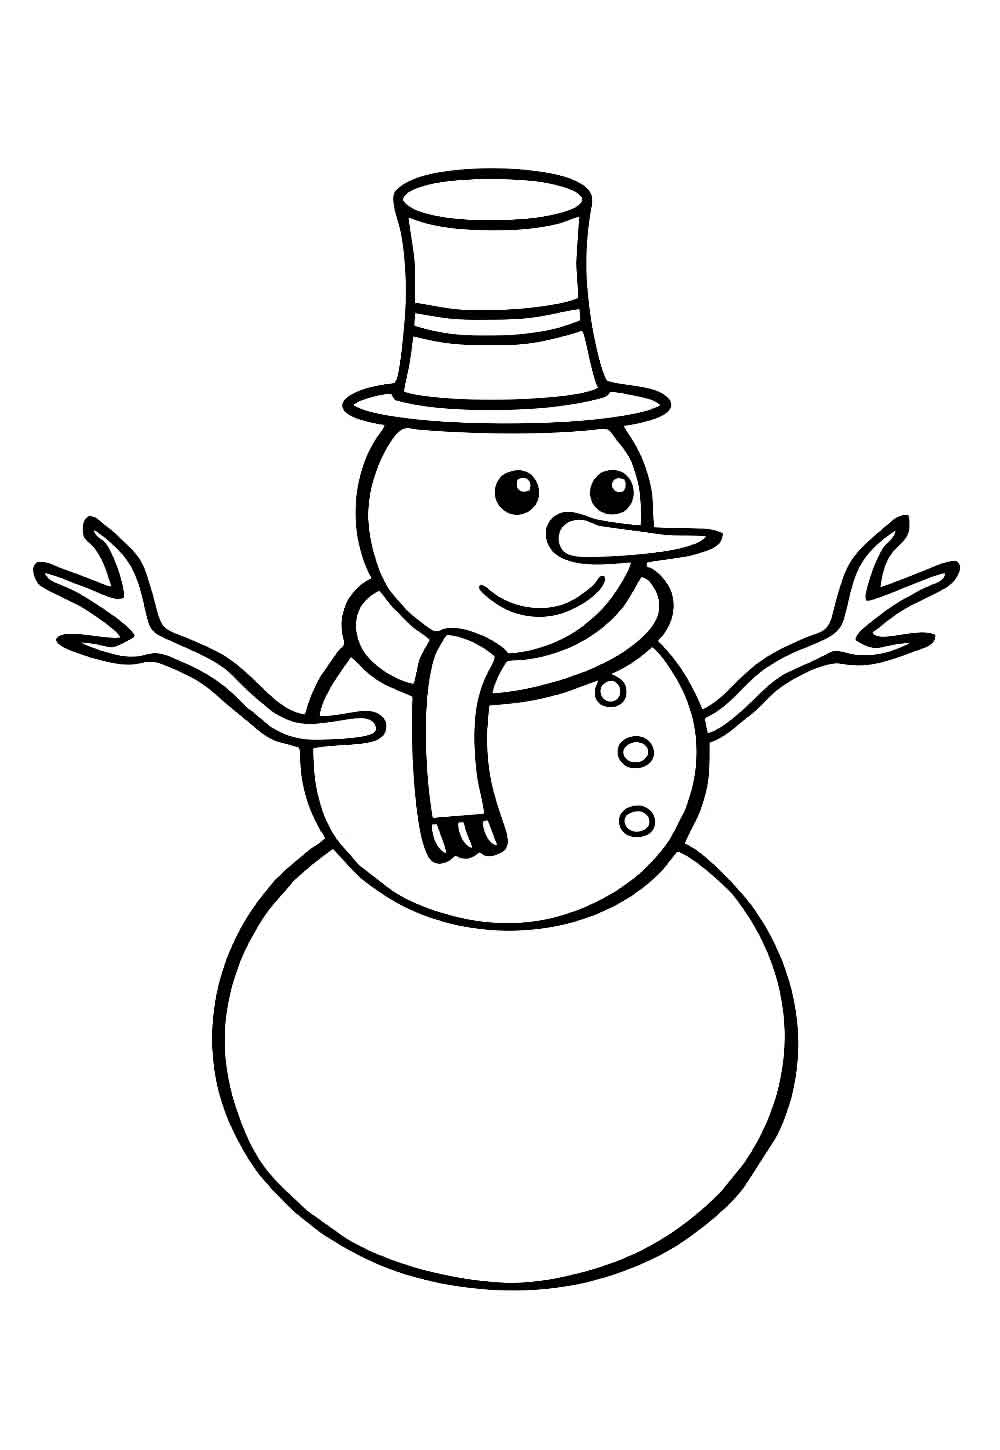 Desenho de Boneco de Neve para colorir